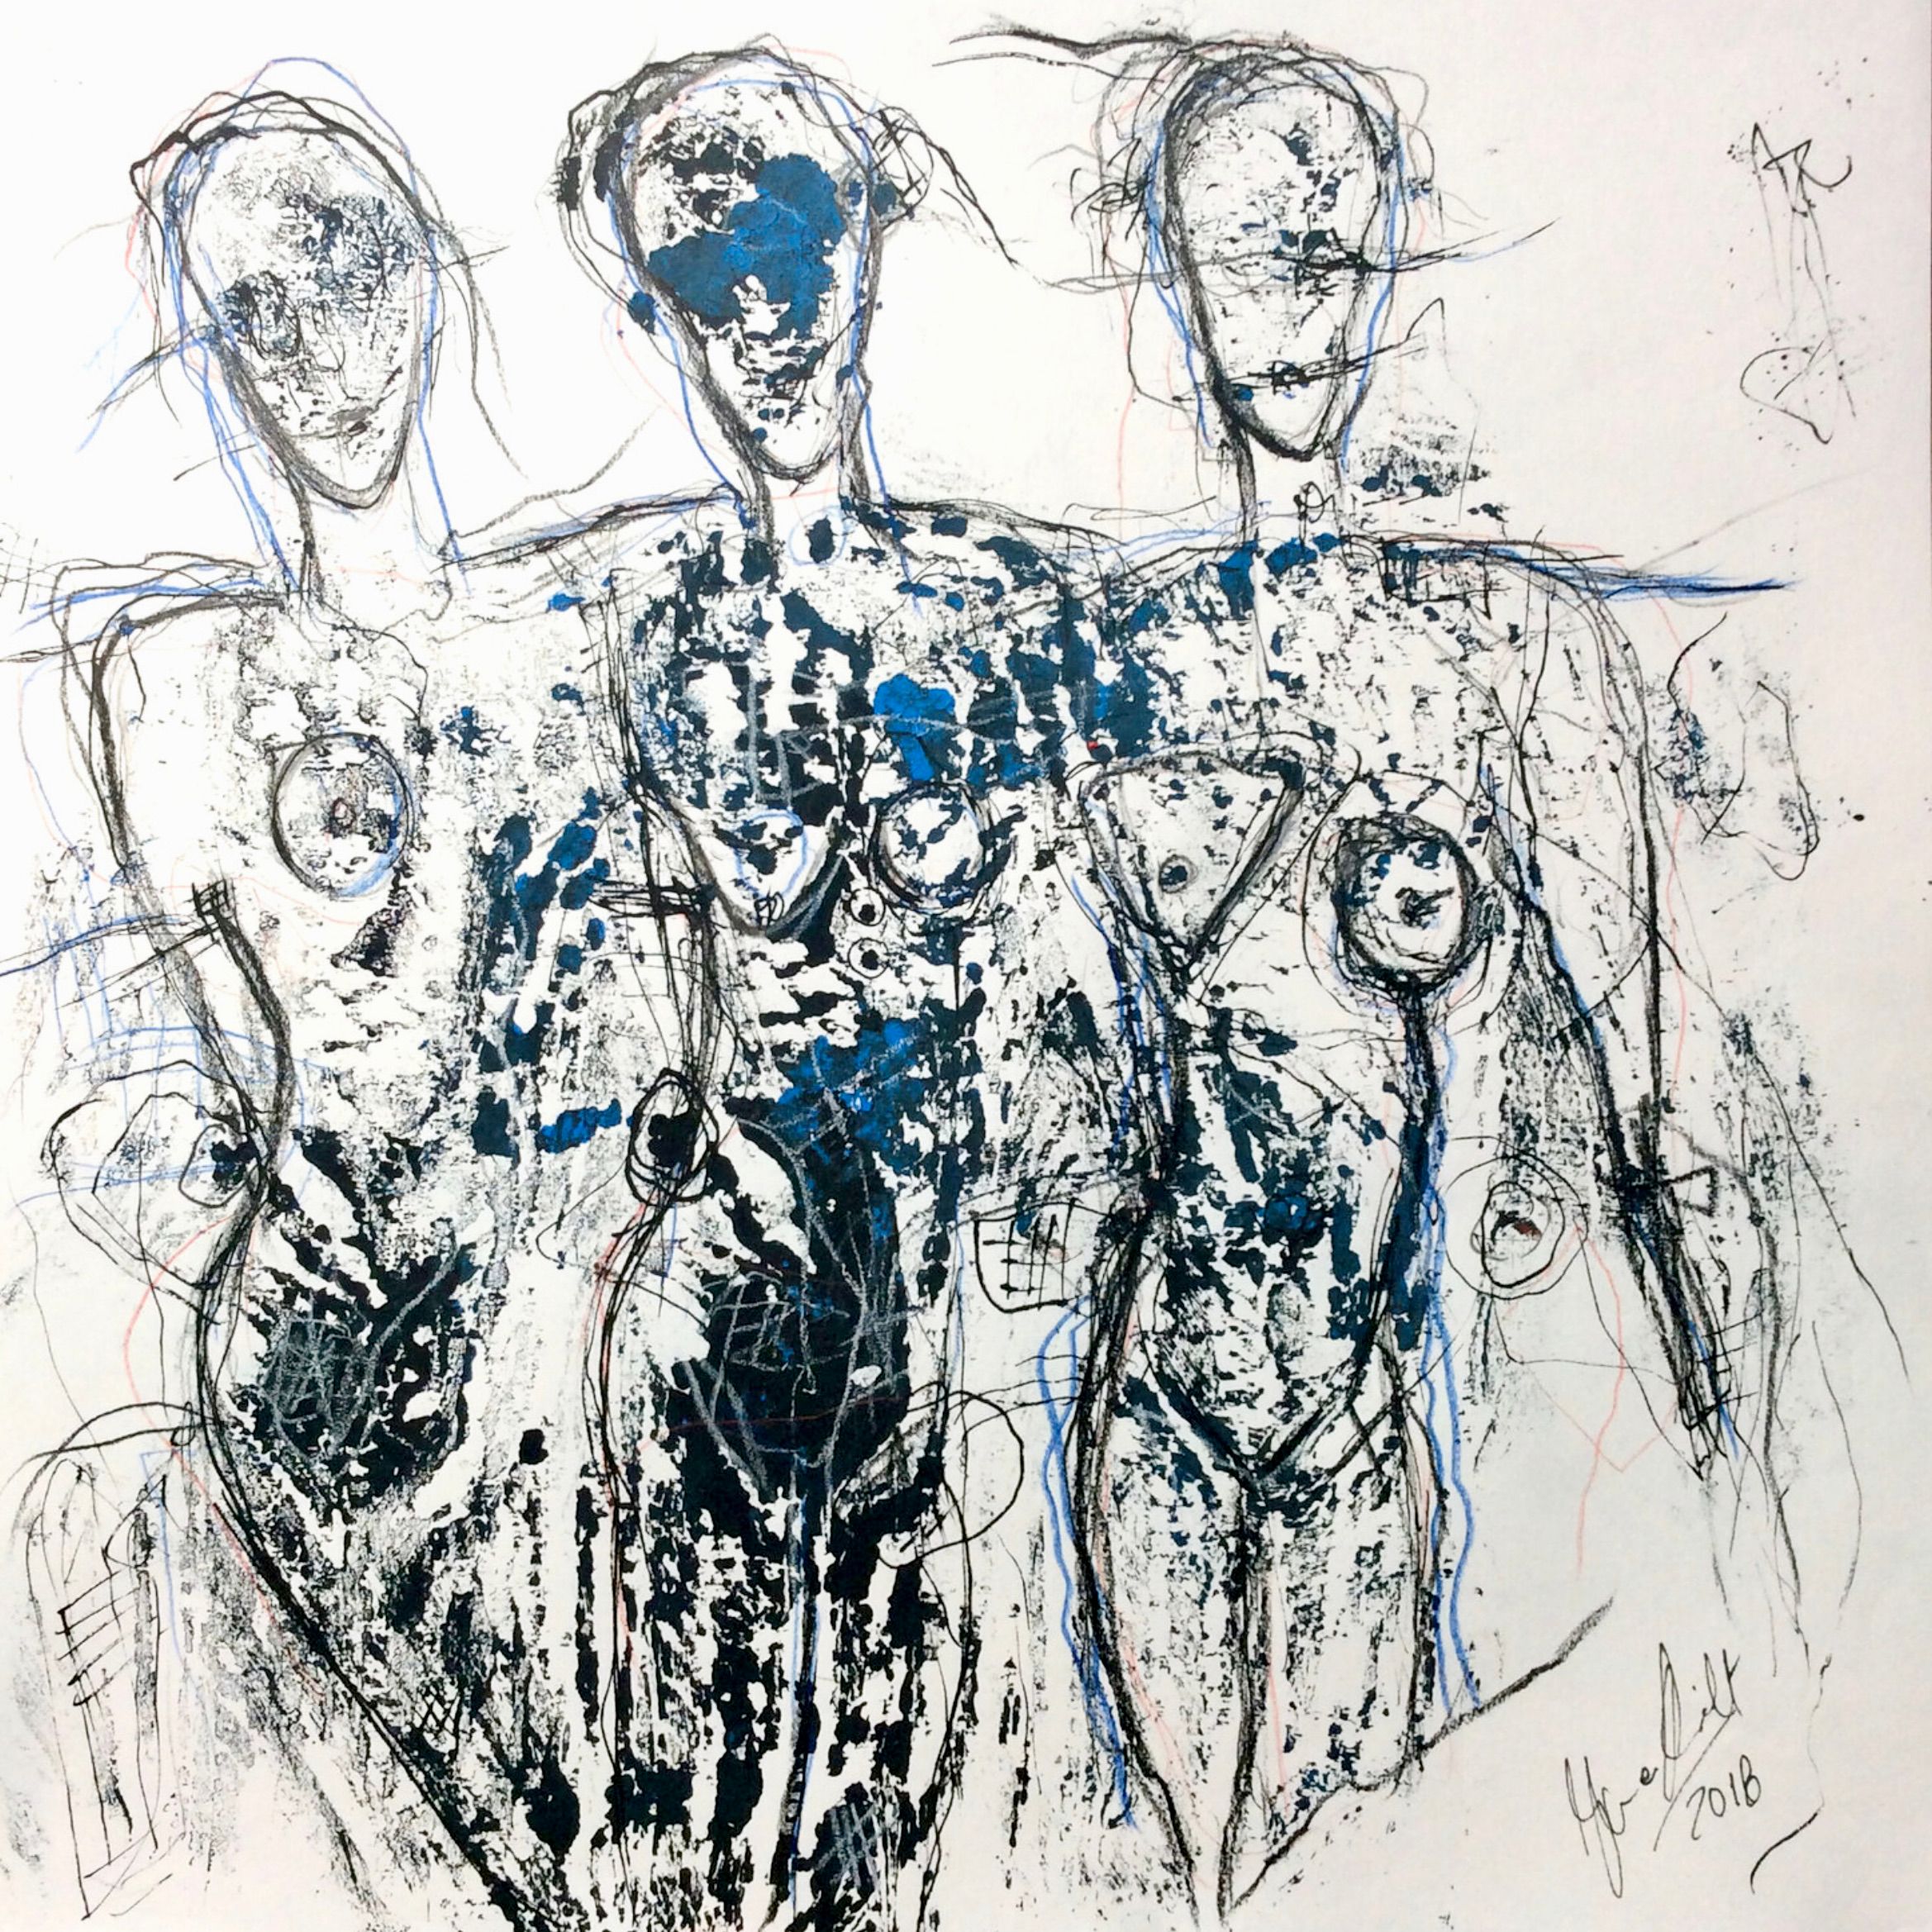 El "Monoprint No. 27" de Ilona Schmidt, pintura/dibujo expresivo semiabstracto, muestra 3 cuerpos femeninos desnudos. En este cuadro predominan los colores blanco y negro, con toques azules.